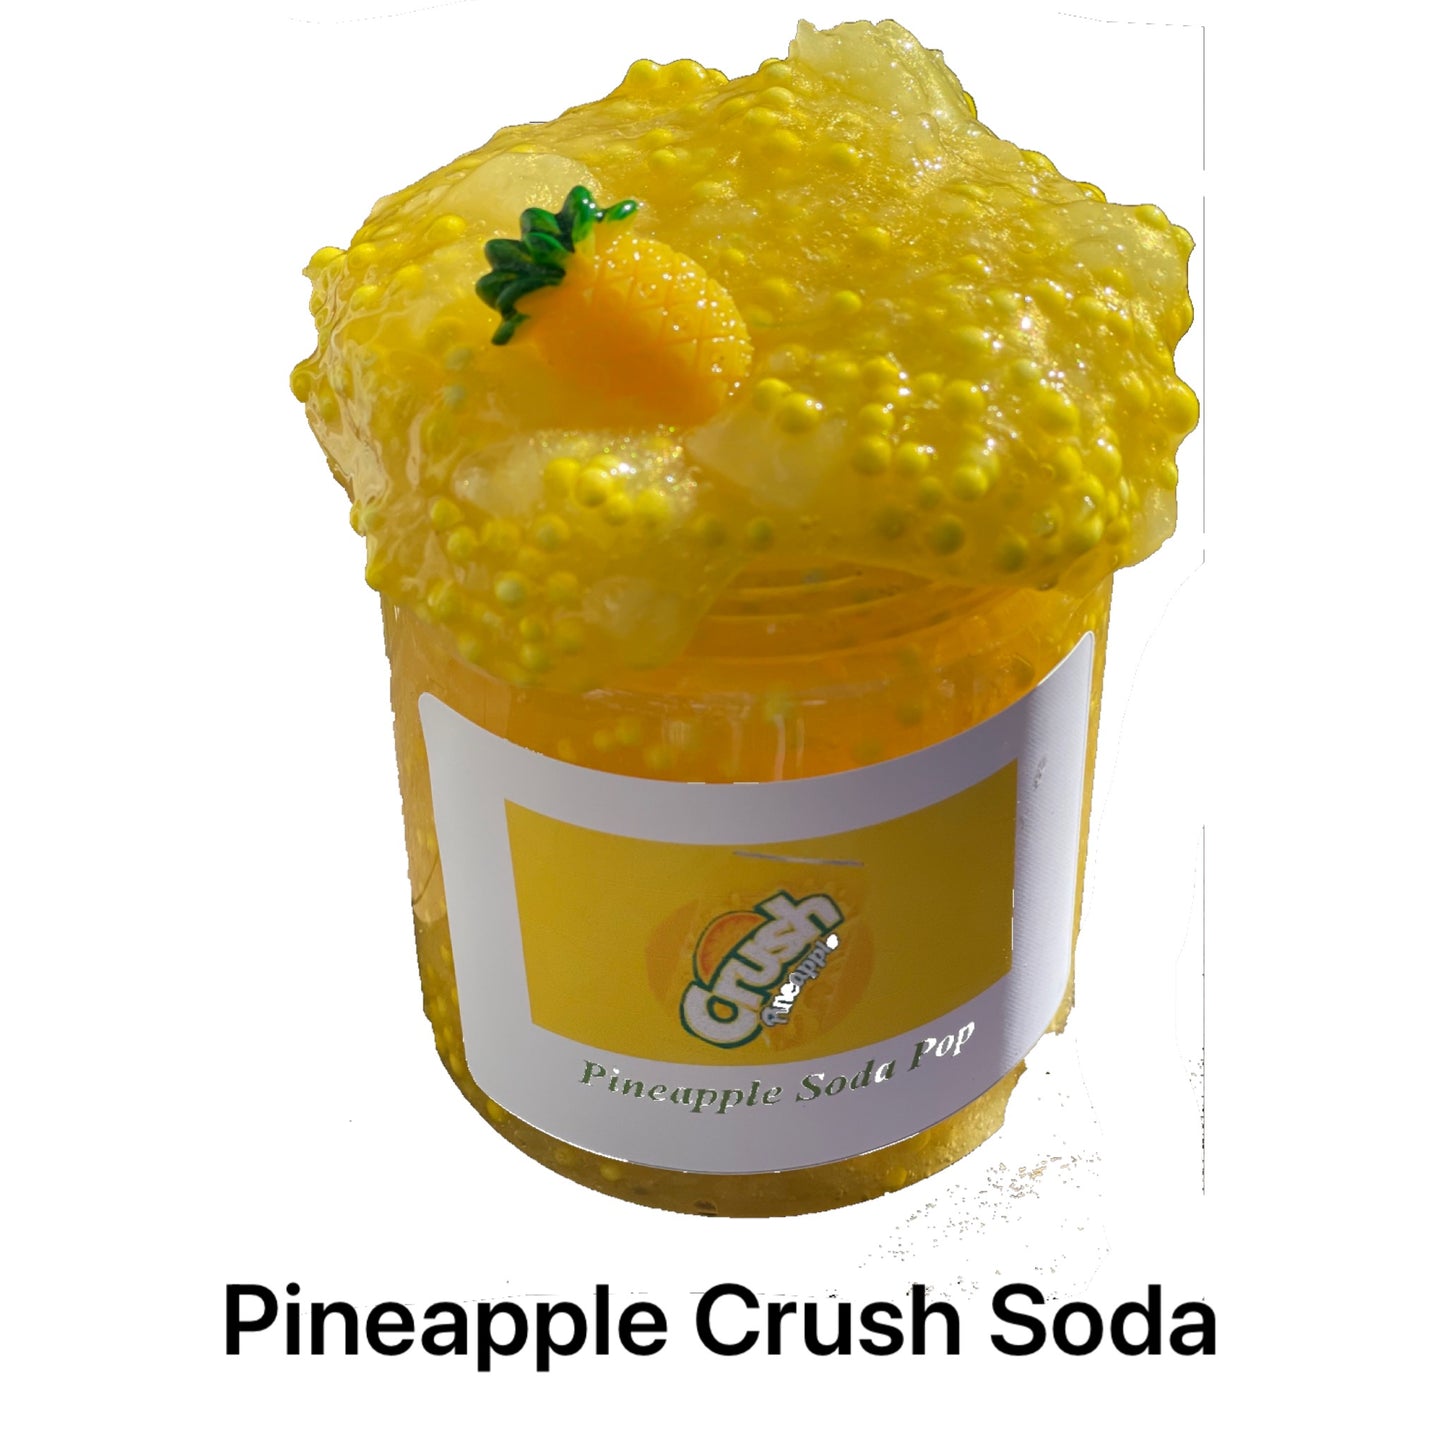 Pineapple Crush Soda